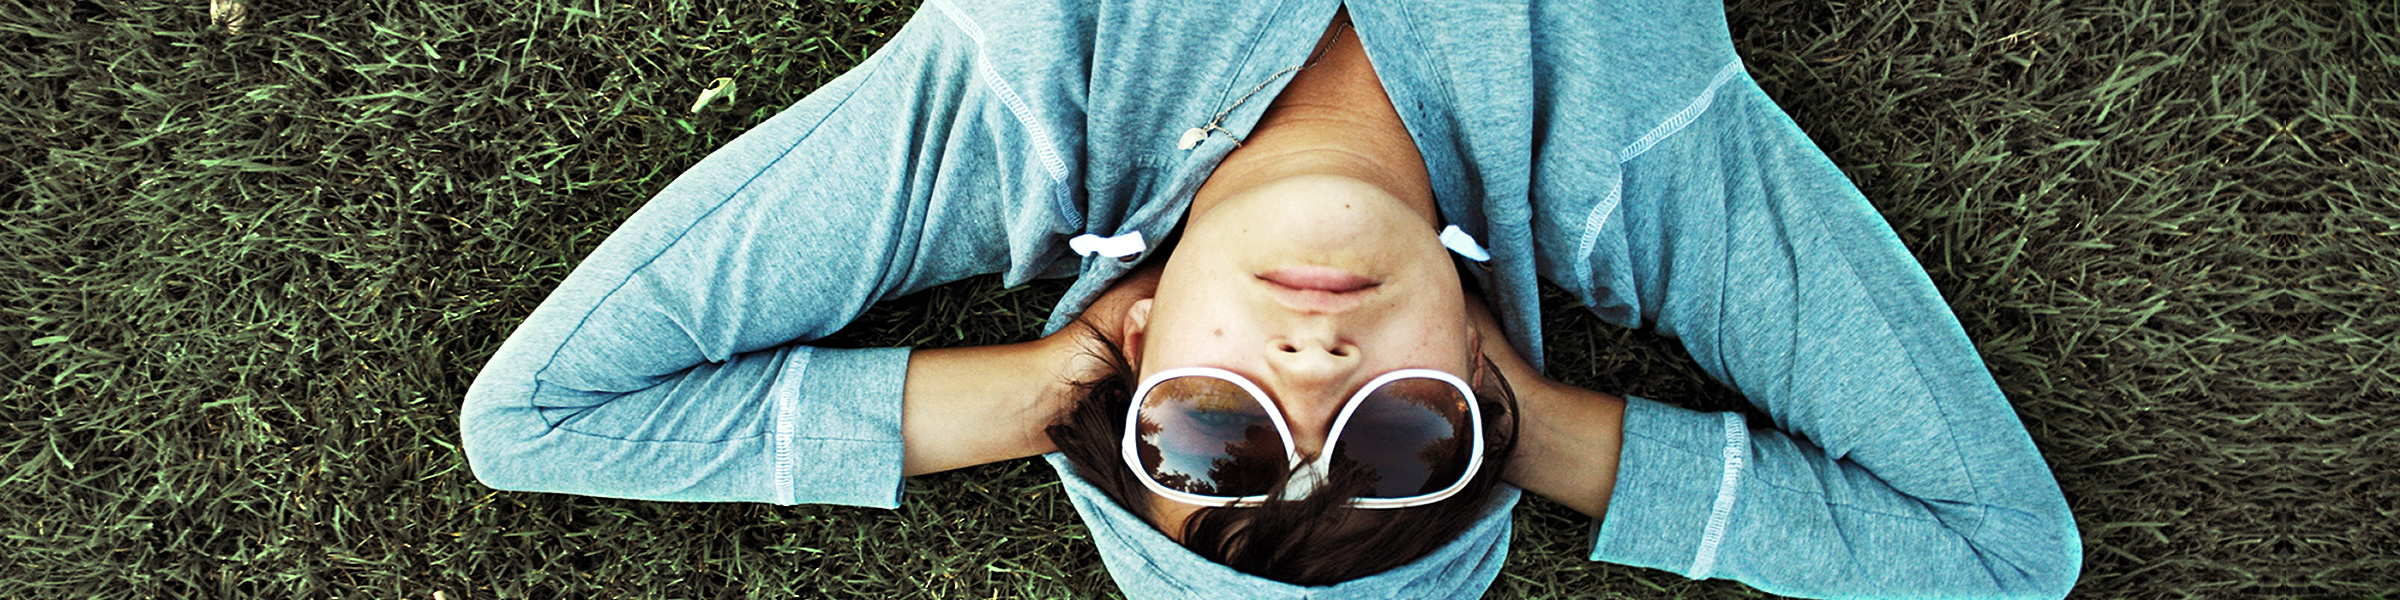 Ein junger Mensch liegt entspannt auf dem Rasen und genießt die Sonne